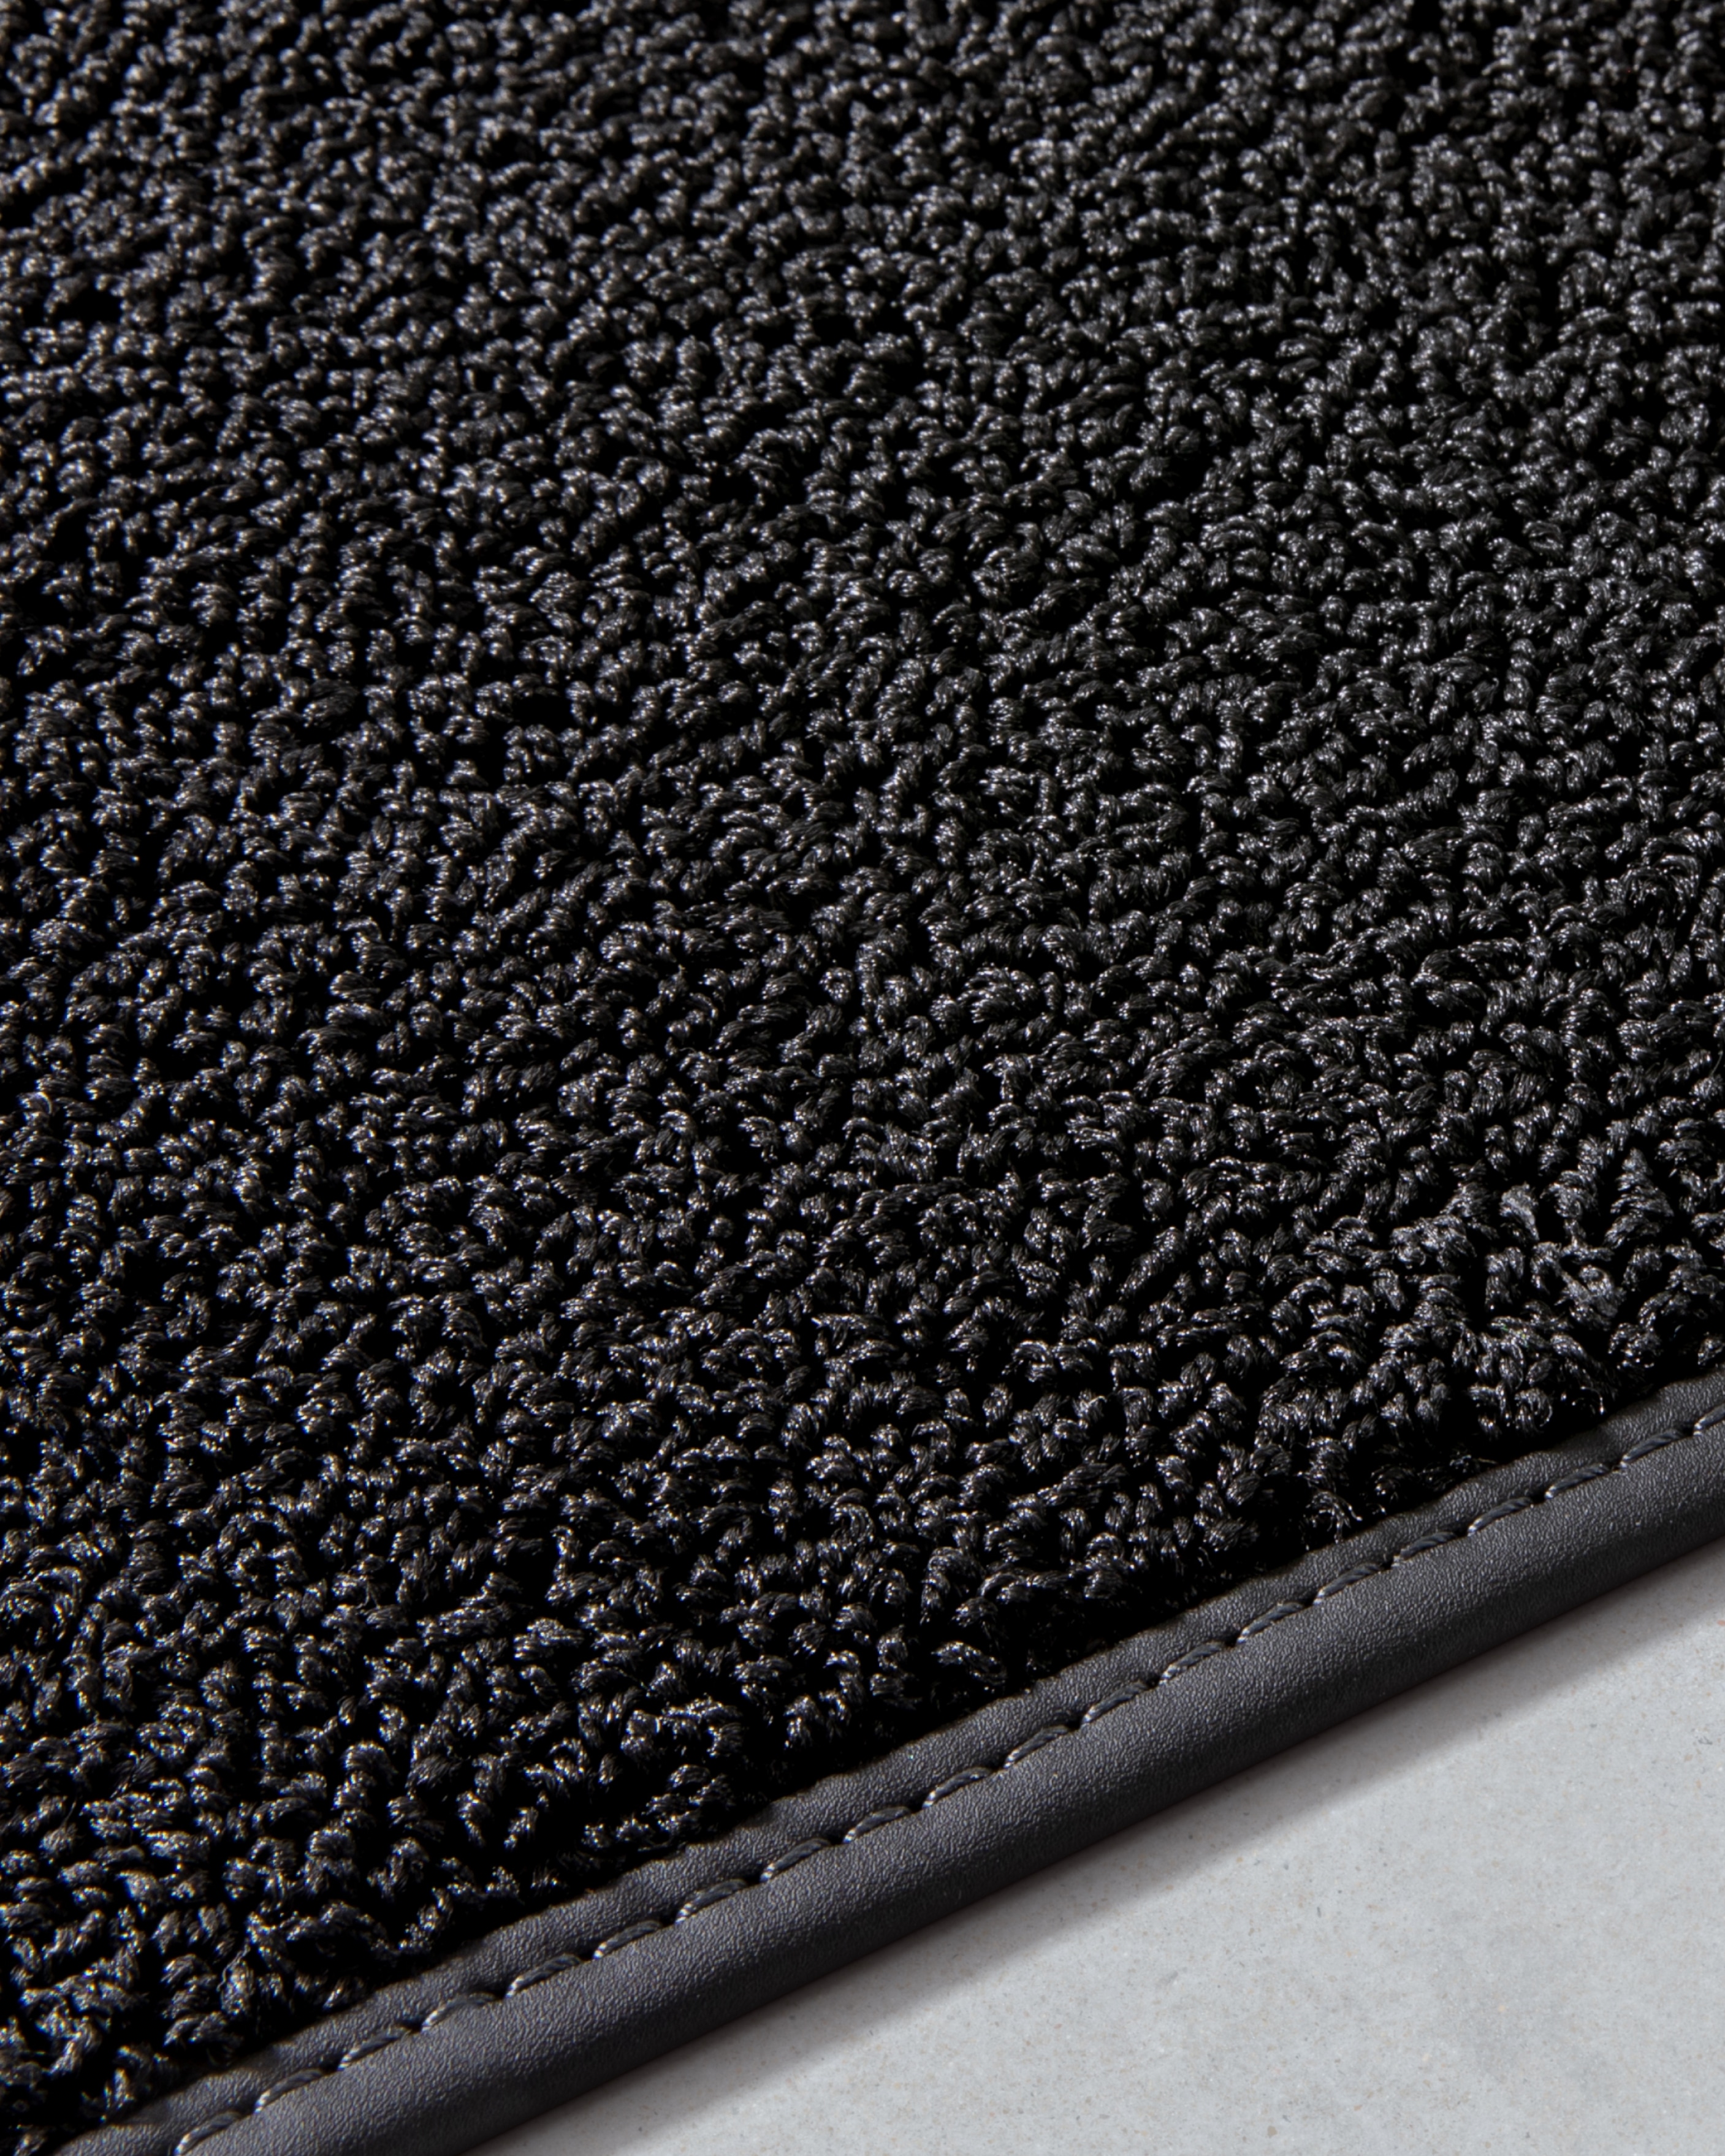 Slika tekstilnih podnih prostirki za Volvo EX30 djelomično izrađenih od riblje mreže i inspiriranih kapima kiše.